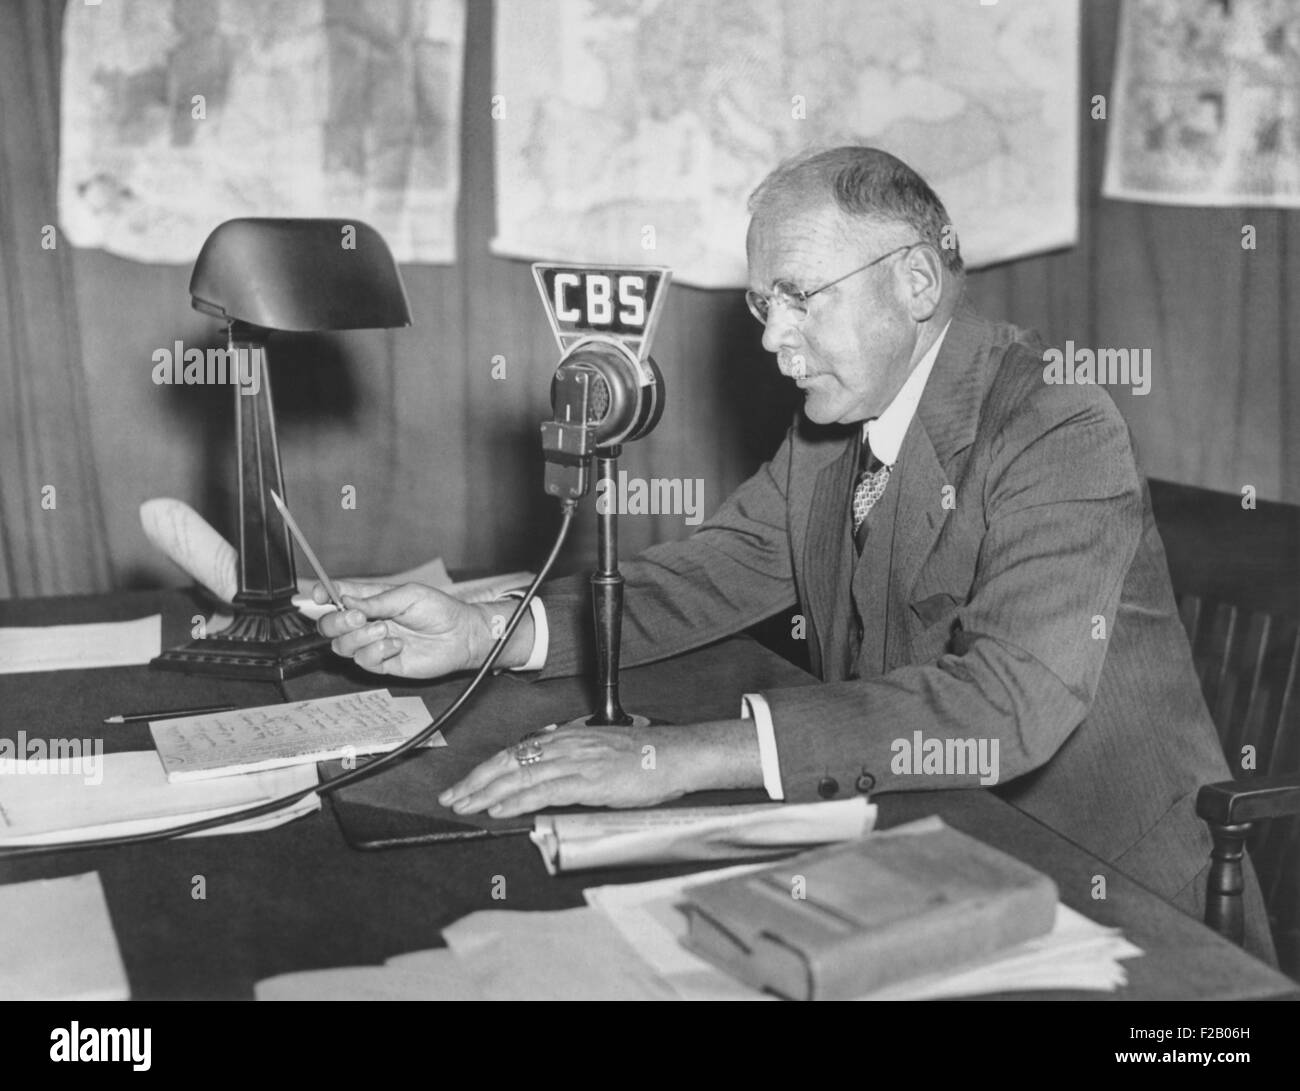 H.V Kaltenborn bei der CBS-Mikrofon, ca. 1938-1940 als Europa bewegte sich auf Krieg. Während der Krise von München im September 1938 er schlief im CBS Studio und Tag und Nacht aus bis zu dem Tag nach der Unterzeichnung des vier-Mächte-Abkommens am 29. September berichtet. Er spielte sich in zwei Filmen, Mr SMITH geht, WASHINGTON (1939) und THE DAY THE EARTH STOOD STILL (1951). T. (CSU 2015 9 674) Stockfoto